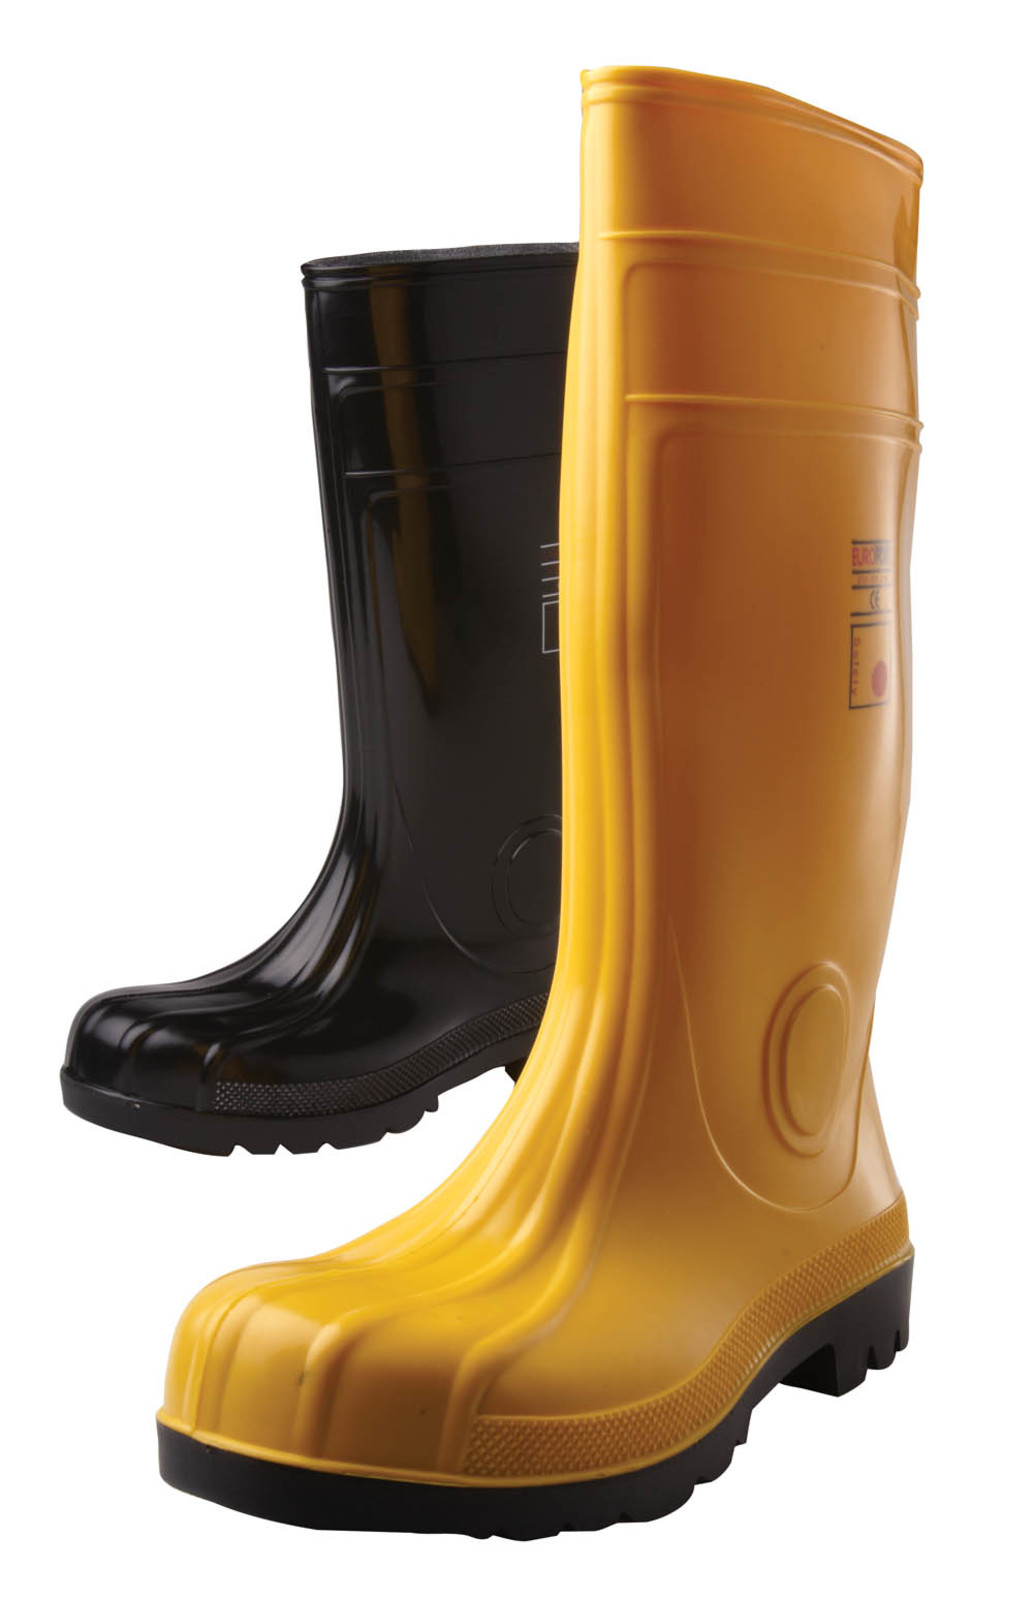 Gumáky Boots Eurofort  S5 - veľkosť: 48, farba: žltá